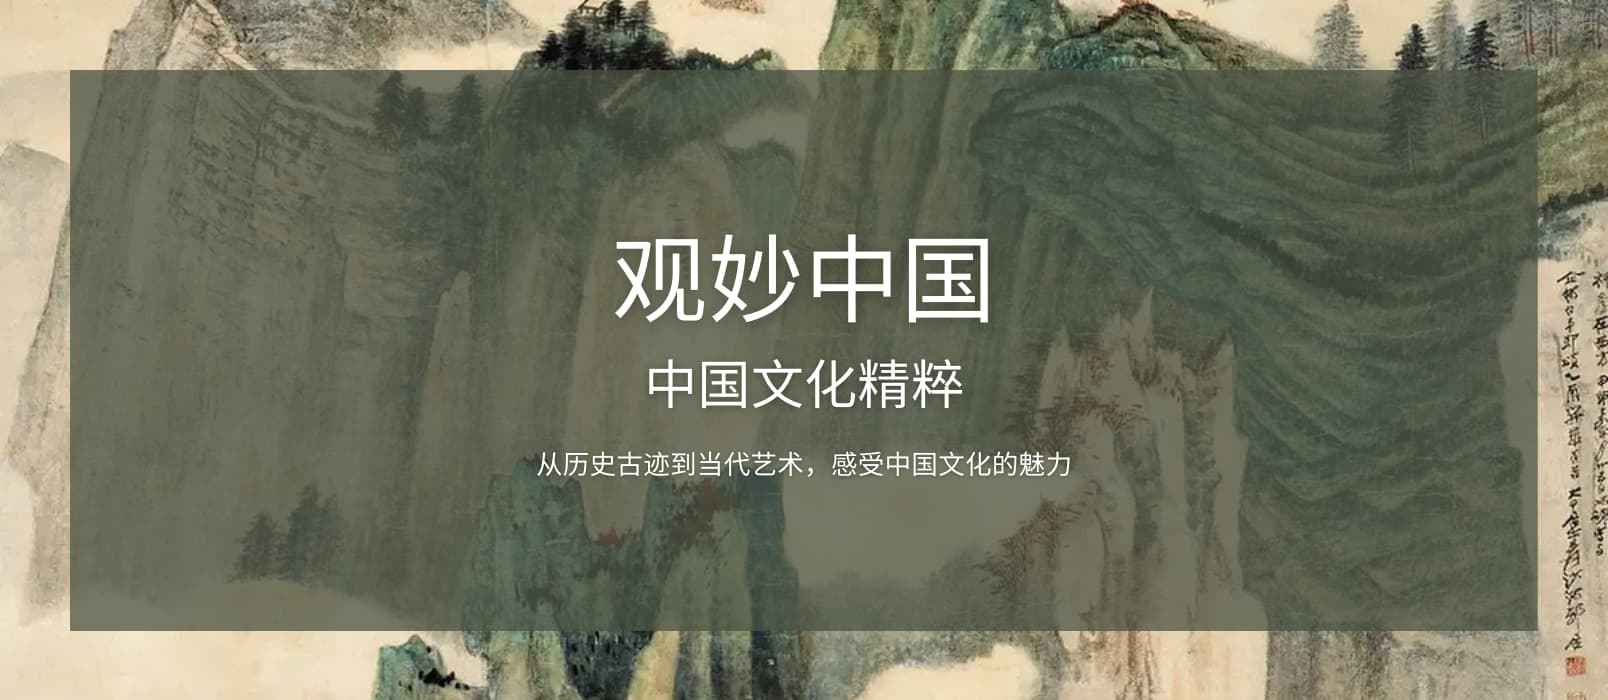 观妙中国 – 在线观看中国 30 家博物馆，超过 8000 件藏品和街景[iPhone/Android]